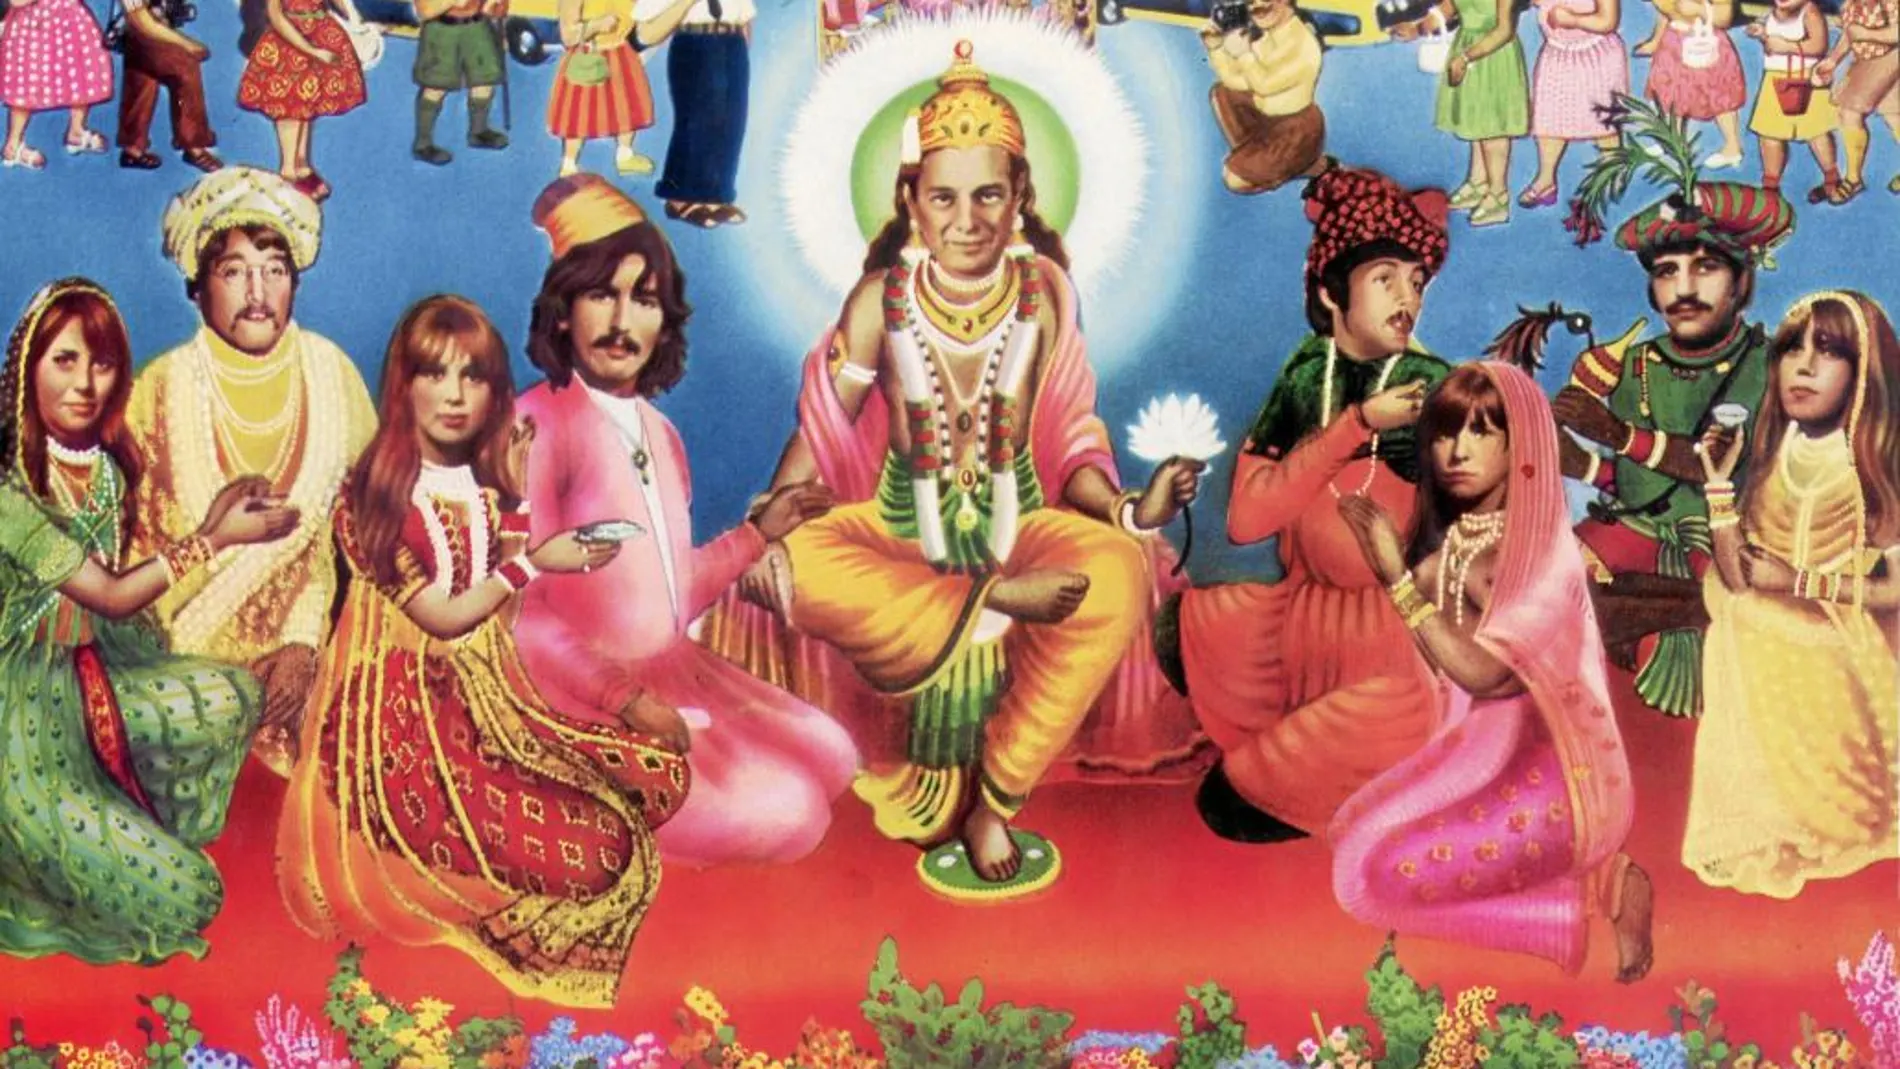 Los Beatles pasaron por esta moda de la meditación, como refleja esta pintura tan kitsch de la época